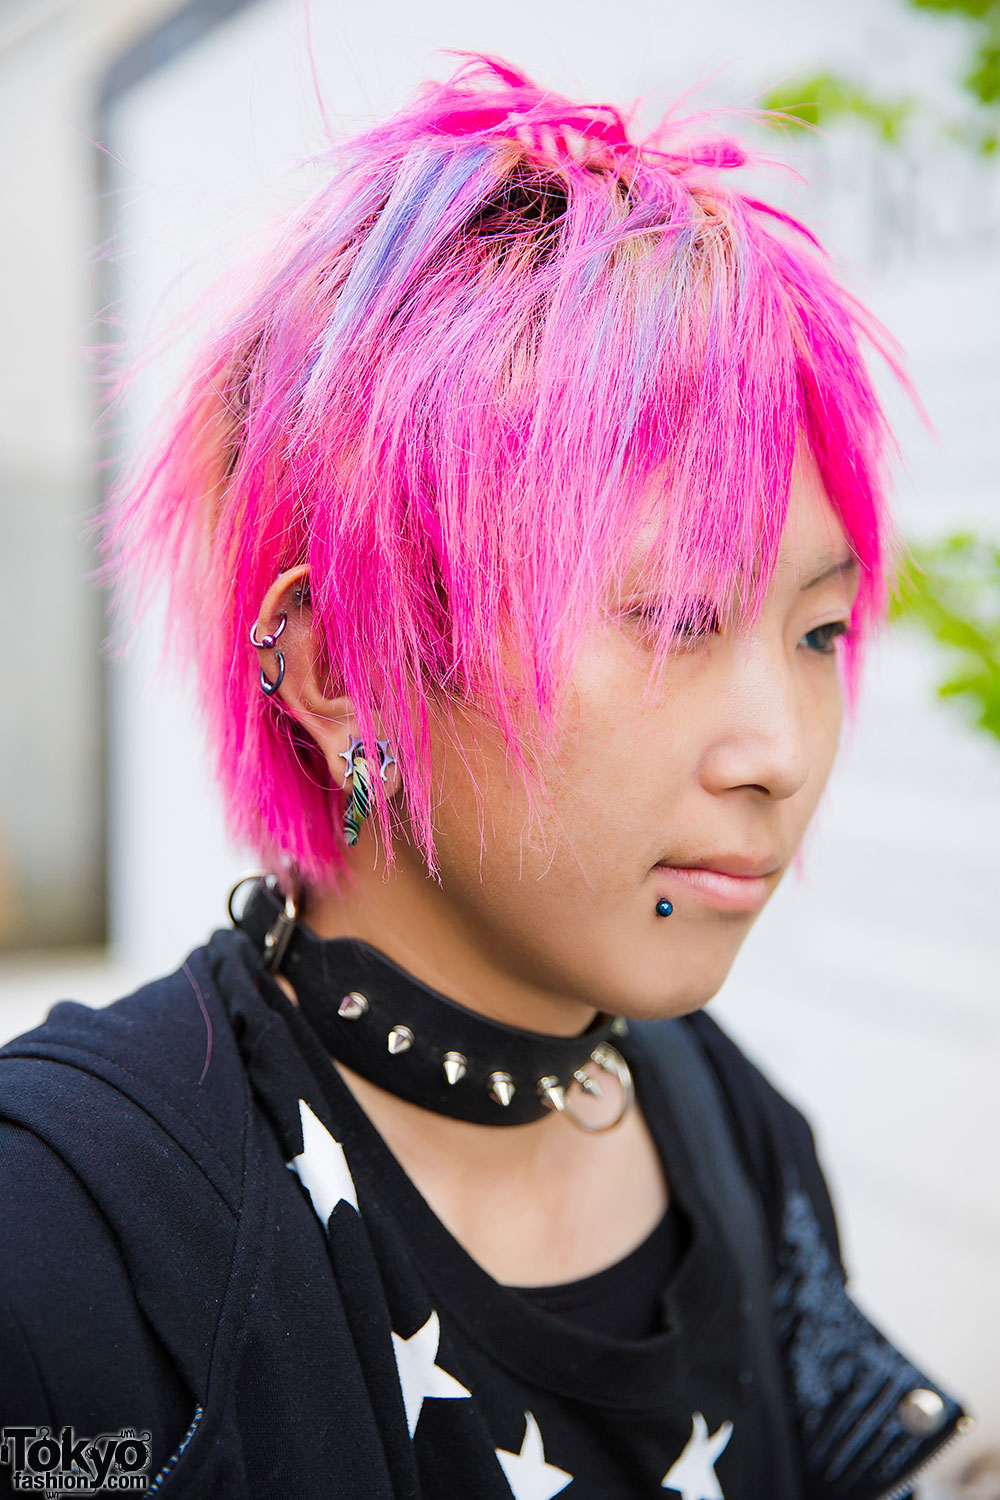 Pink Hair, X-Men Top, Skeleton Tights & LV in Harajuku – Tokyo Fashion